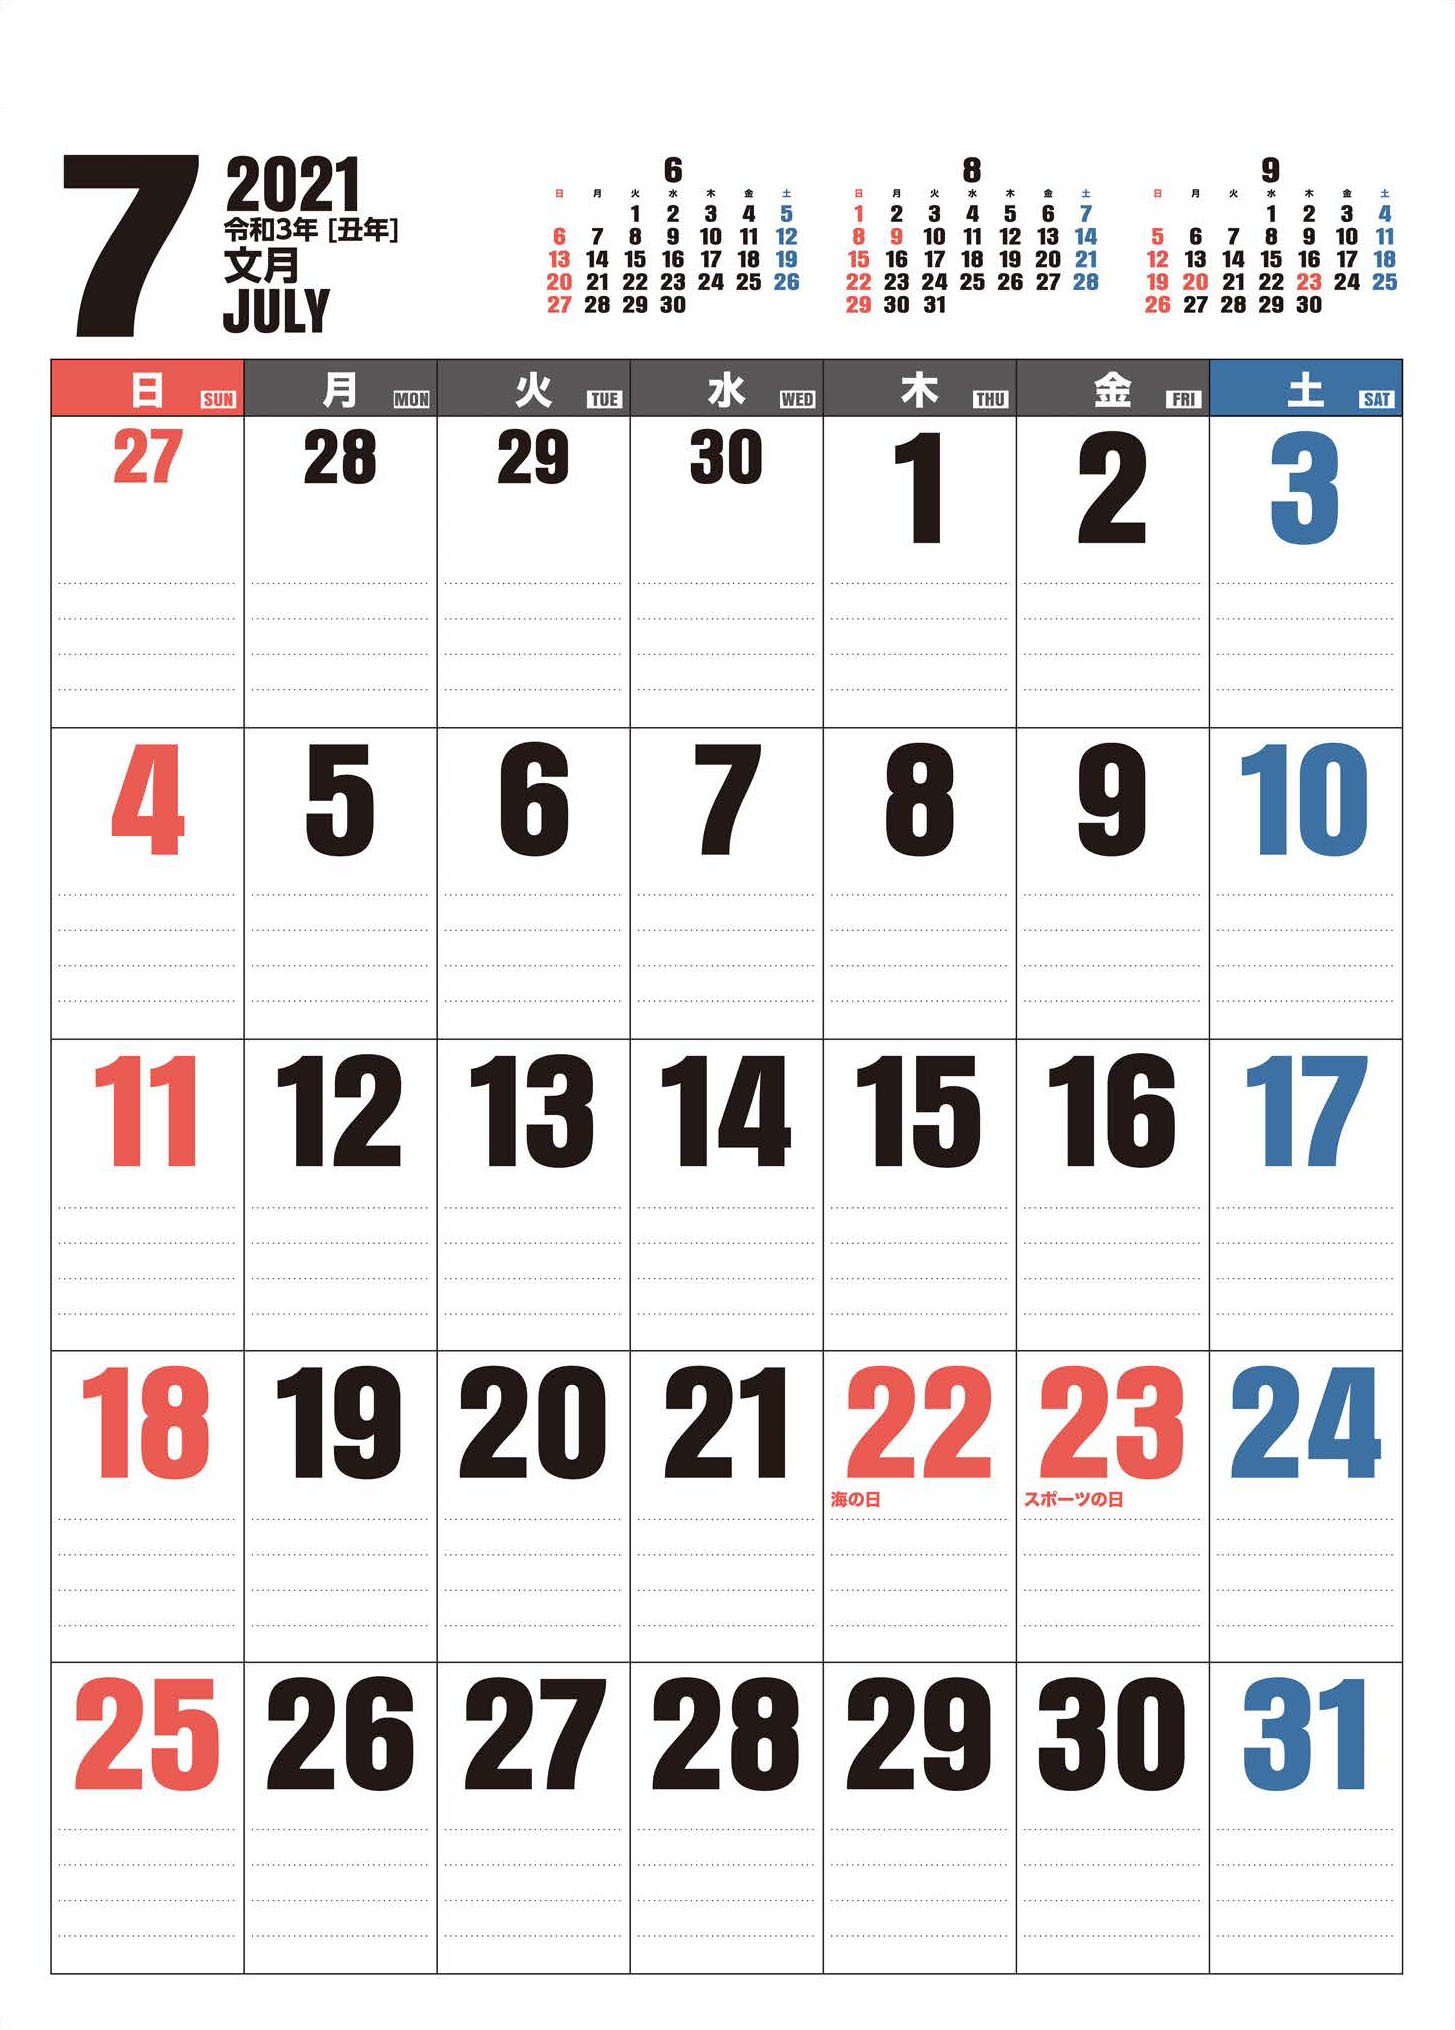 祝日改正が正規に表記されたカレンダー出来ました。